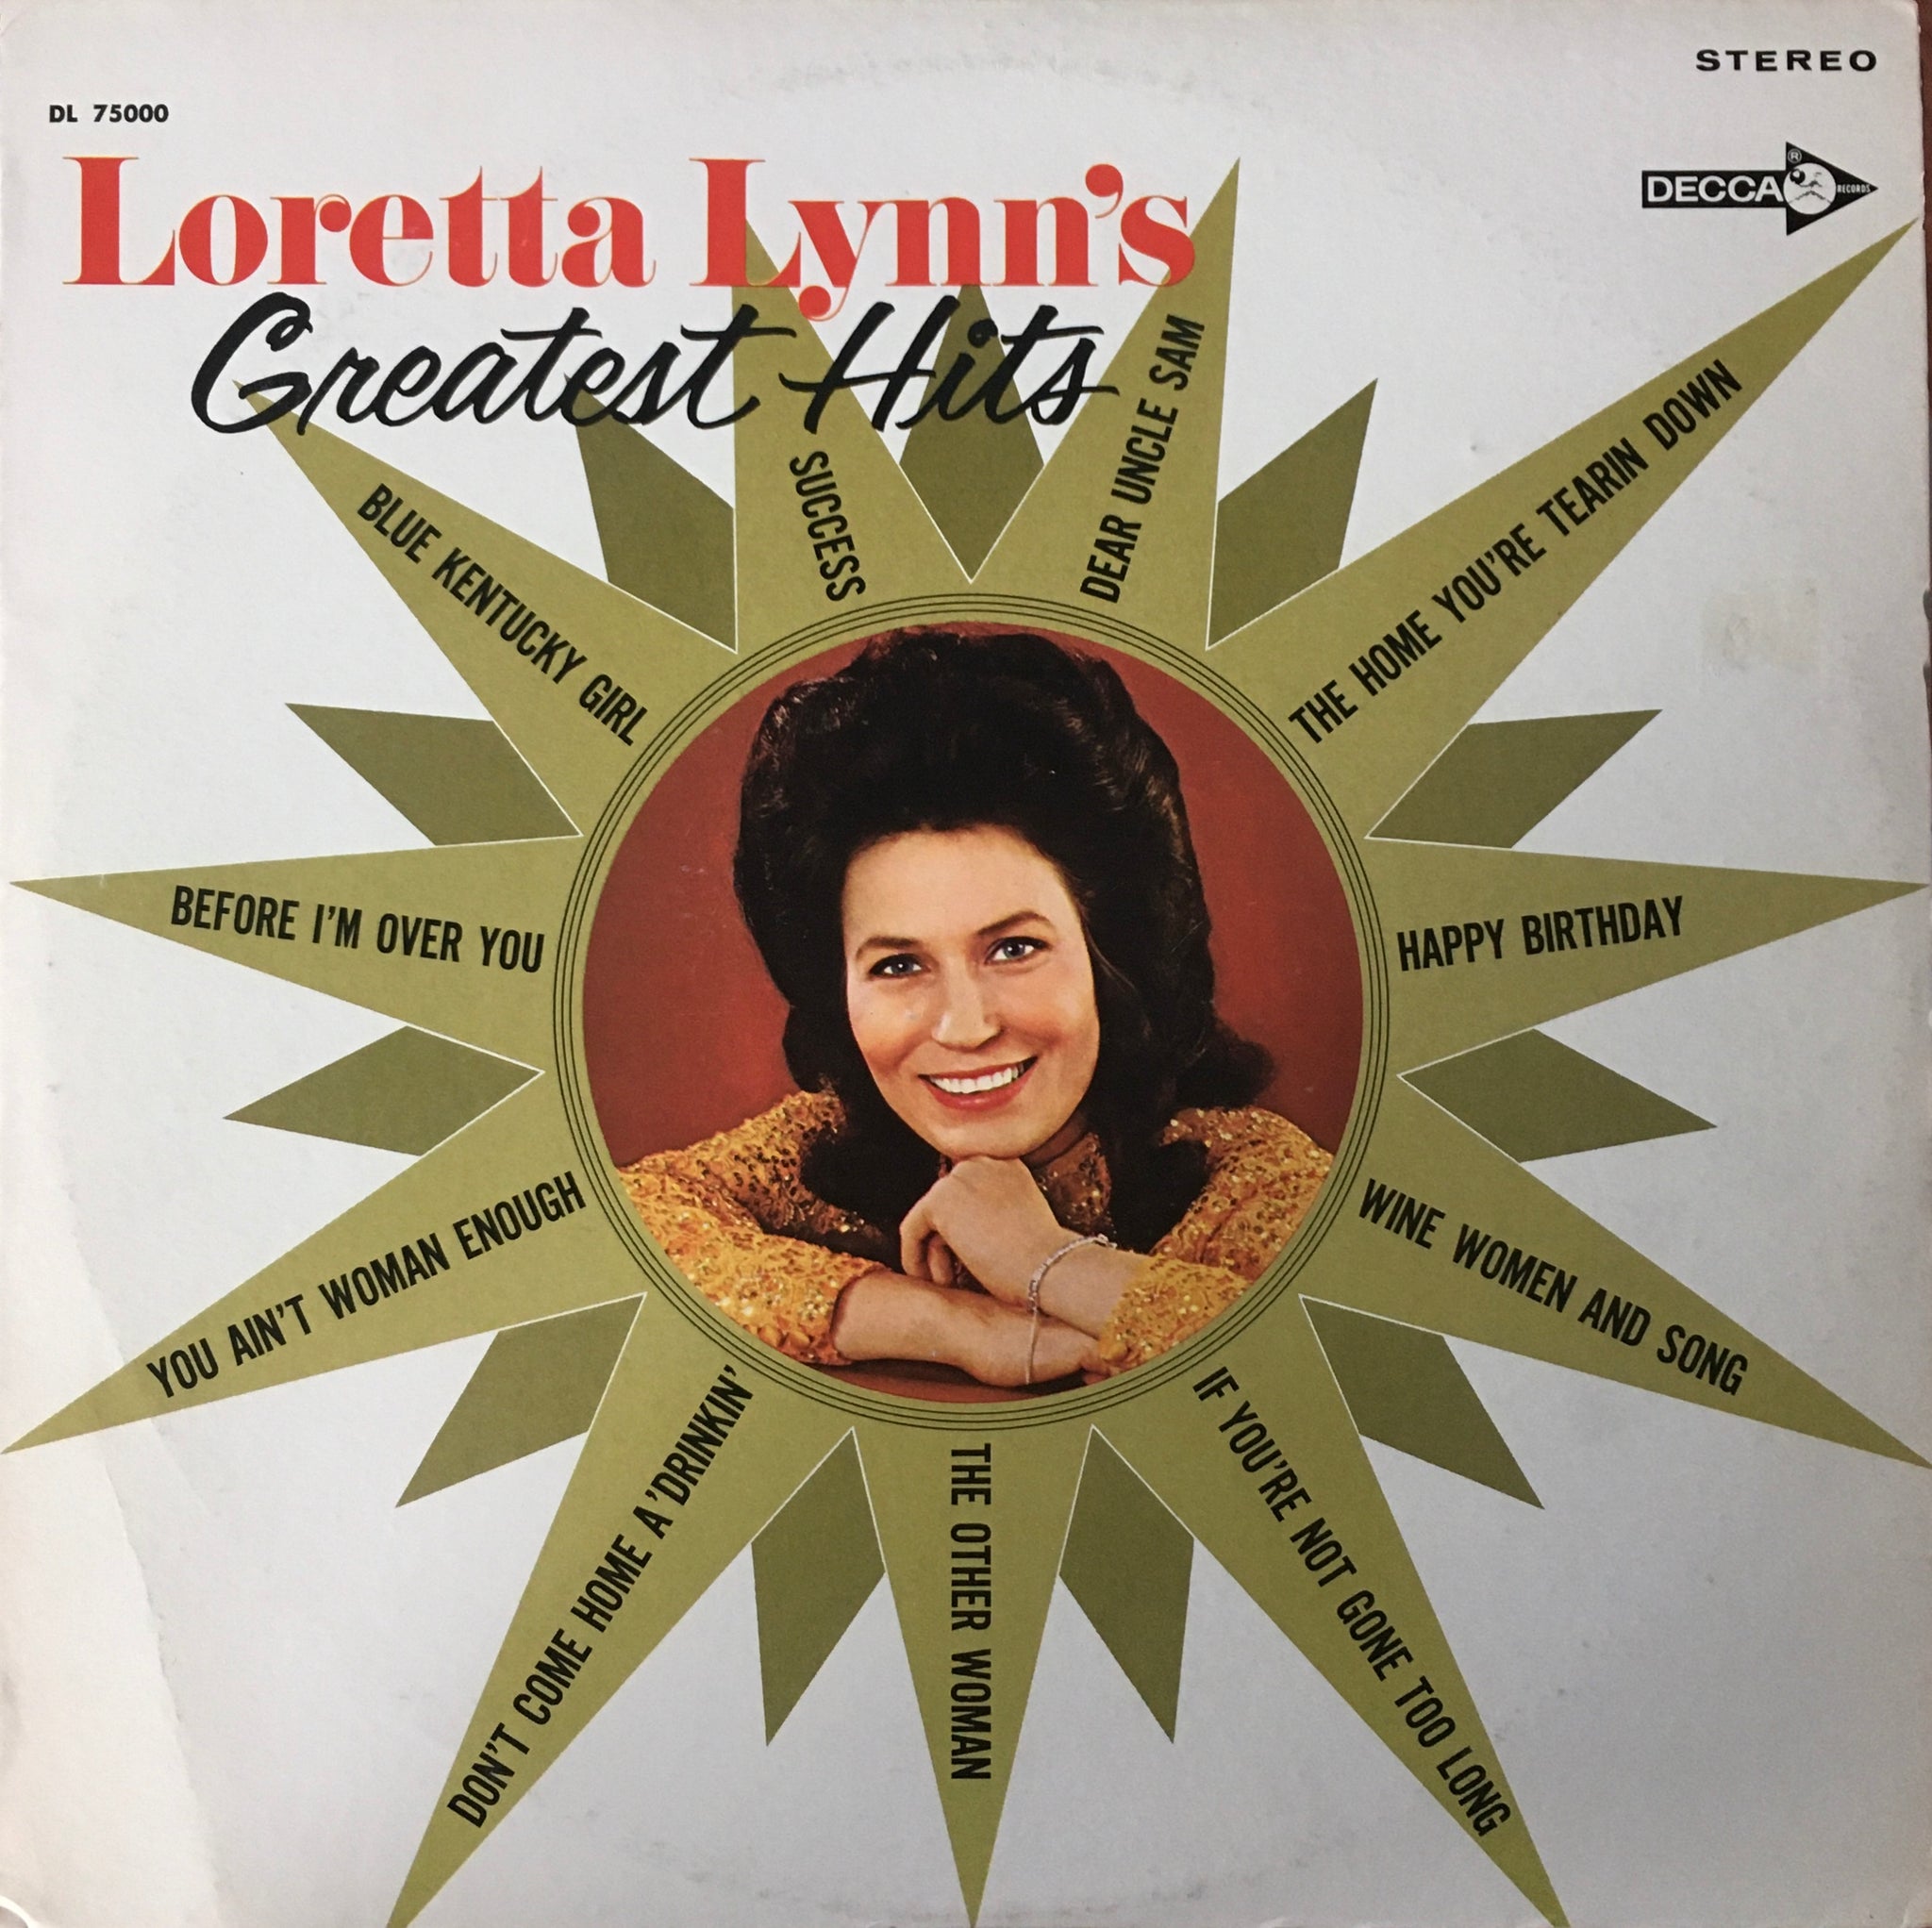 Loretta Lynn's "Greatest Hits" LP (1978)